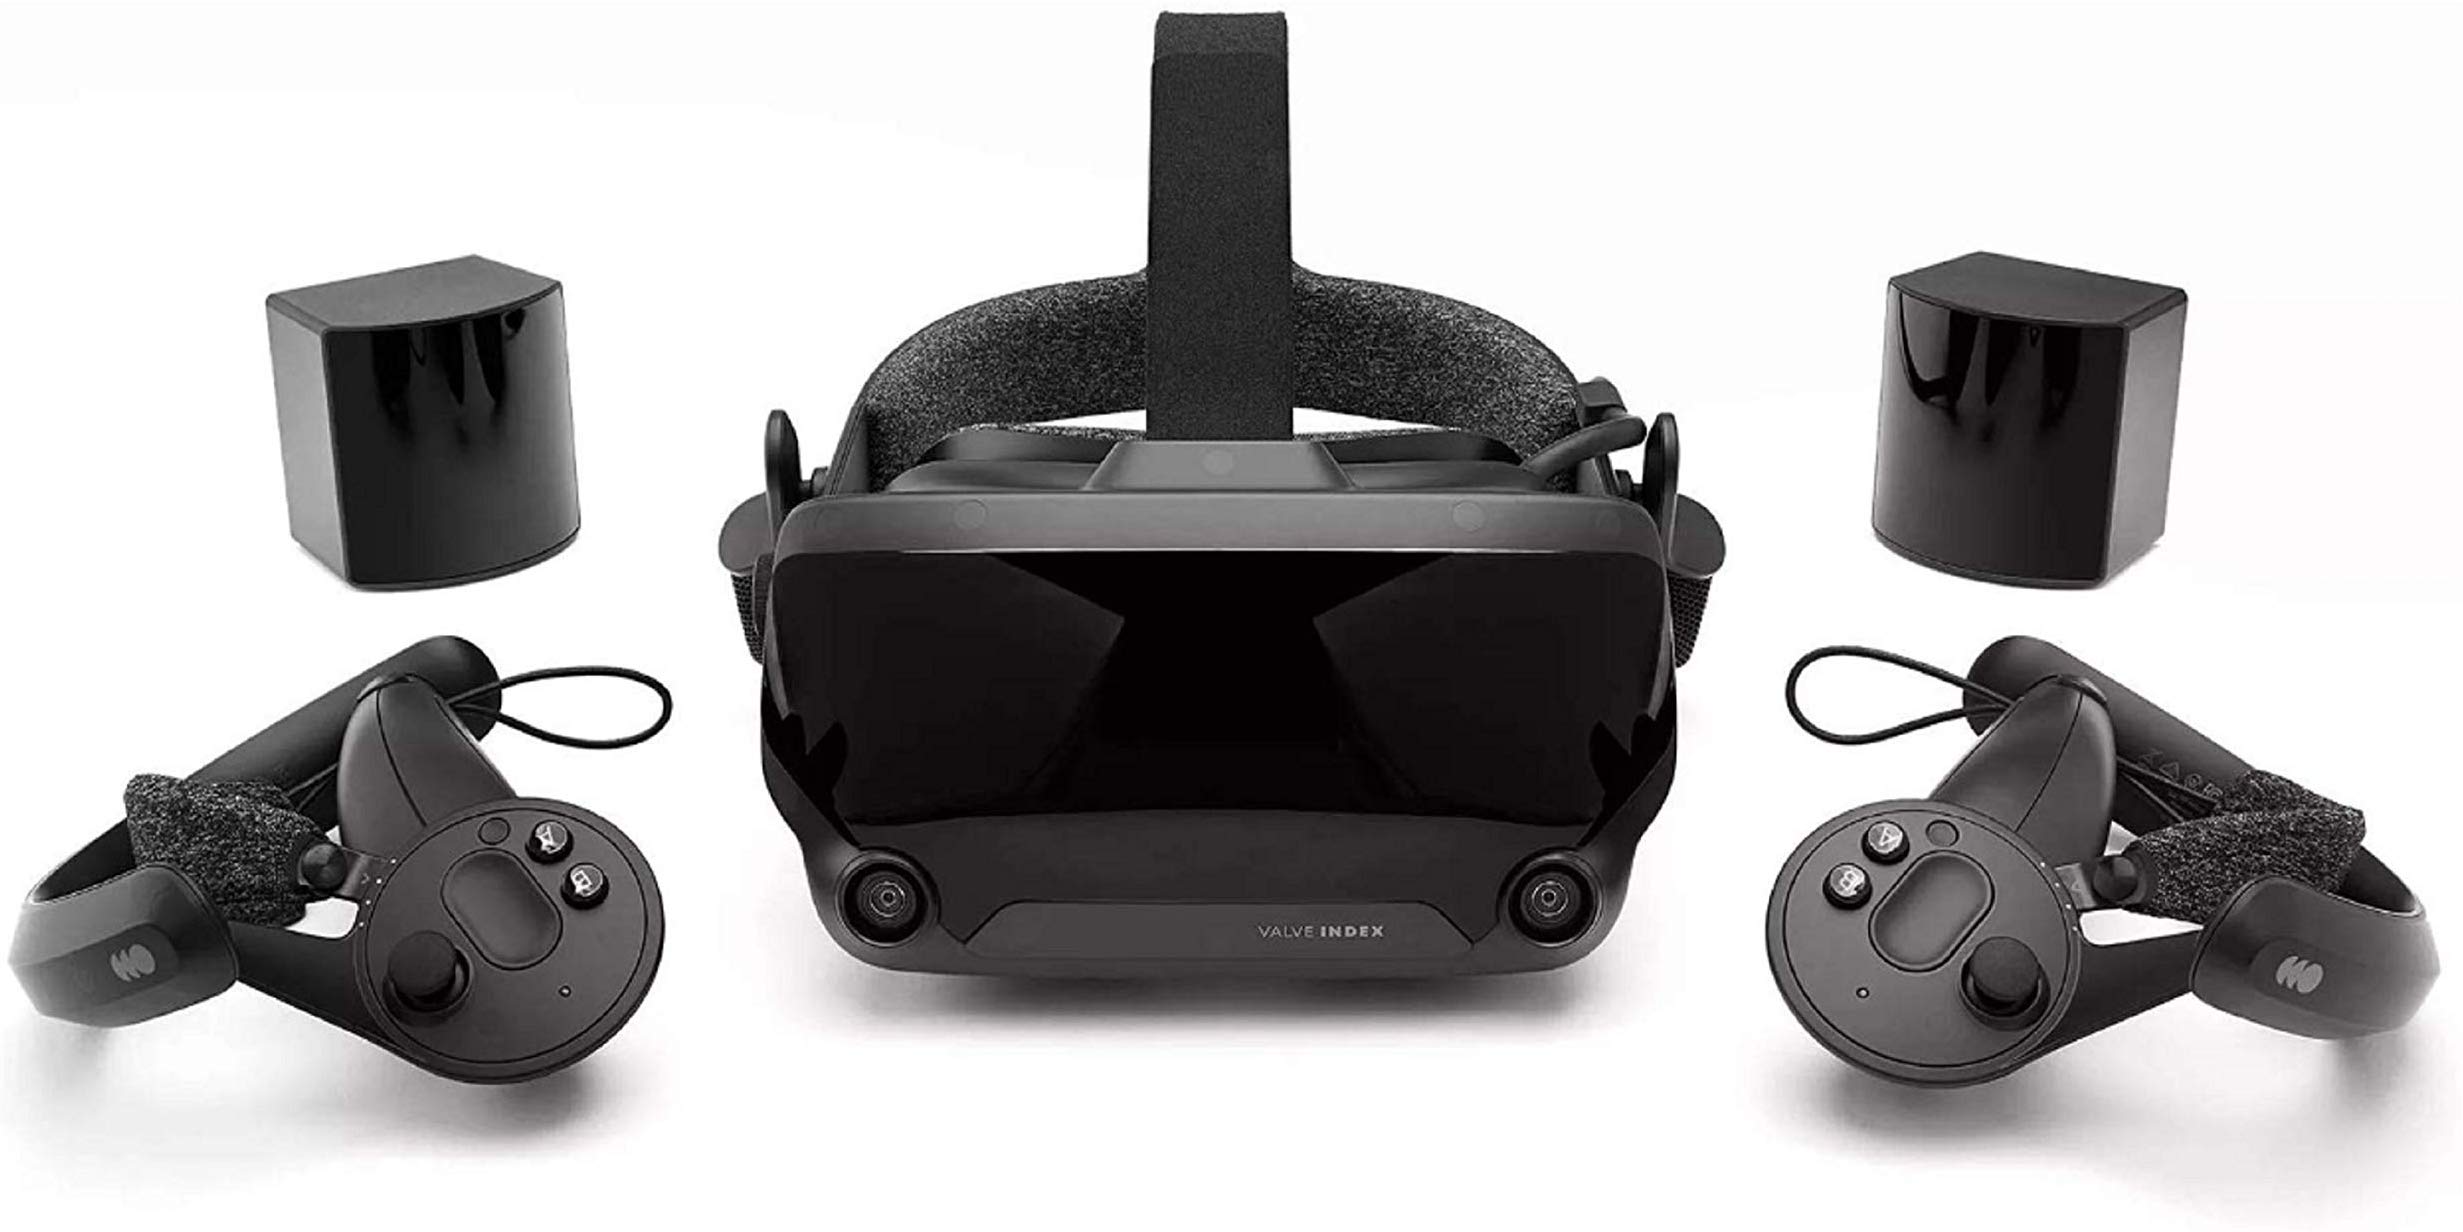 Locura global: agotaron el casco de realidad virtual Valve Index